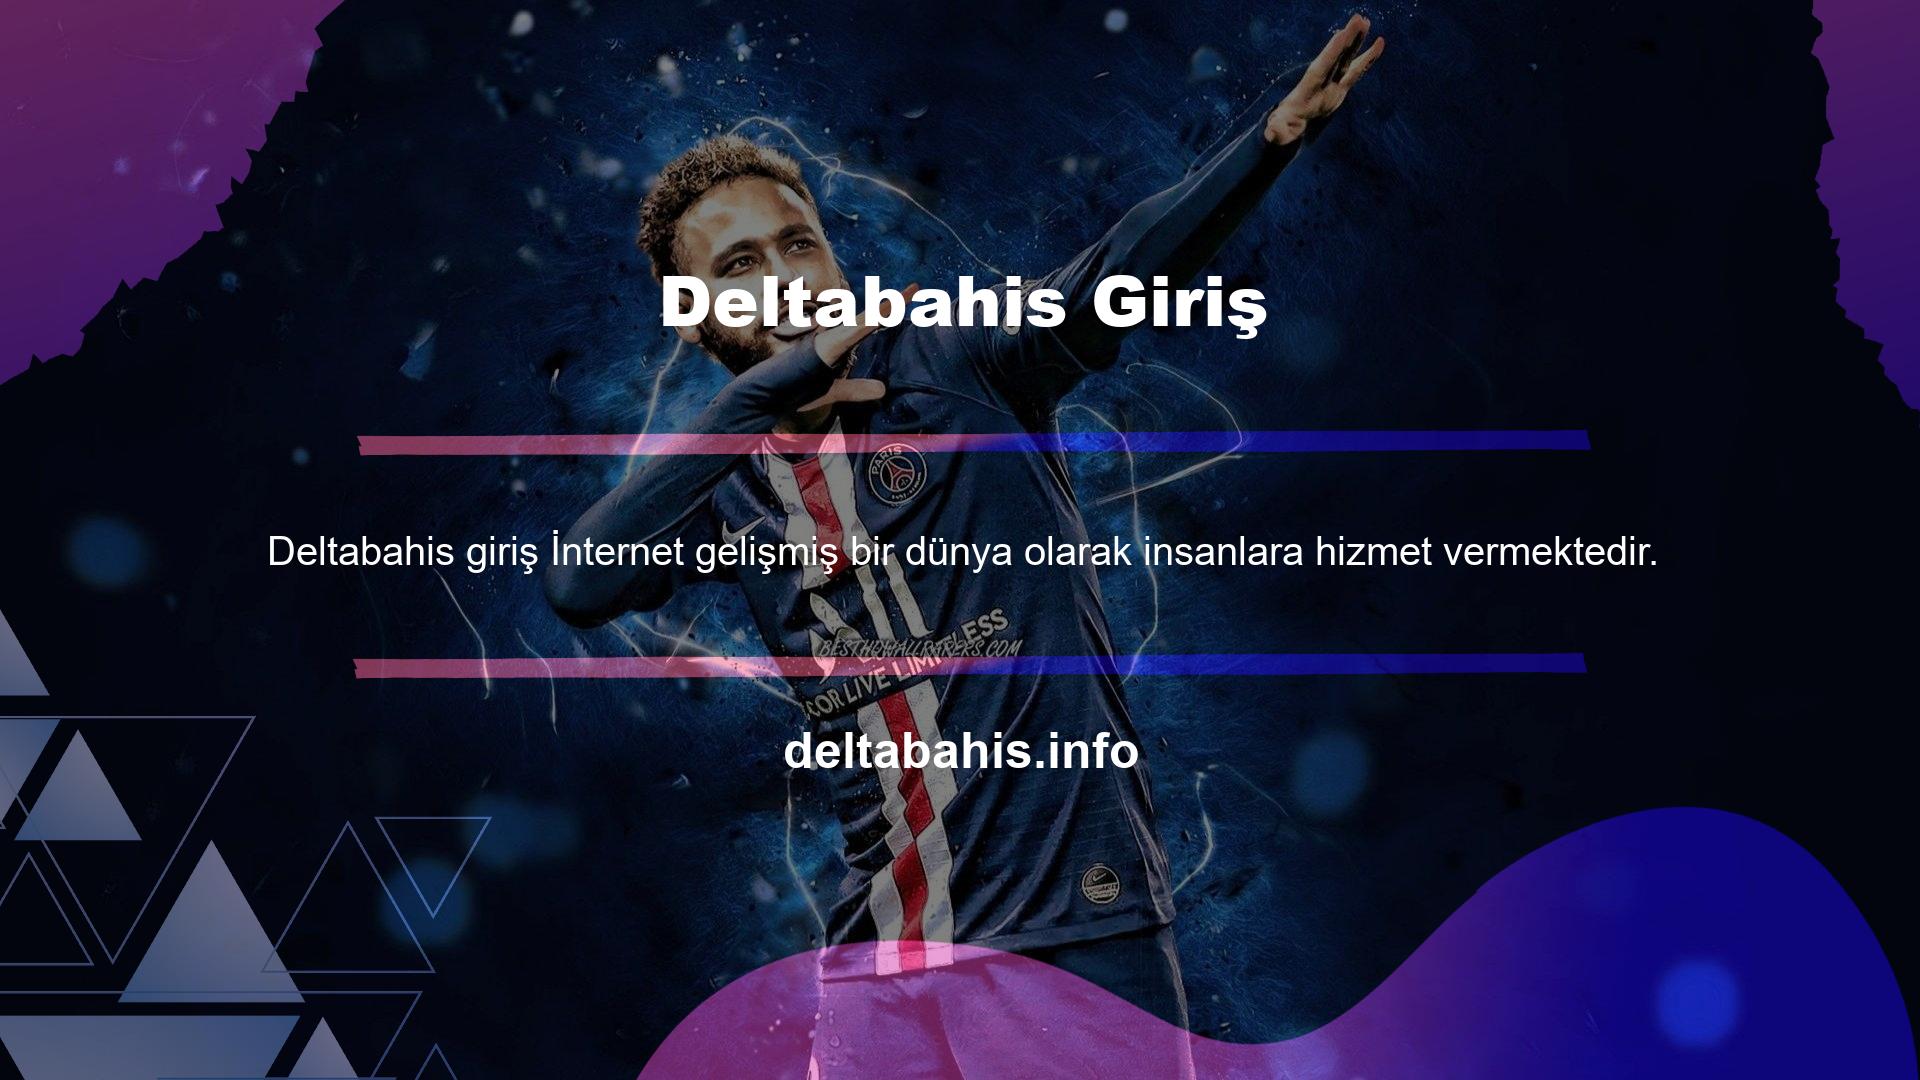 Deltabahis, kullanıcılara internetin tüm yeniliklerini sunan bir web sitesidir